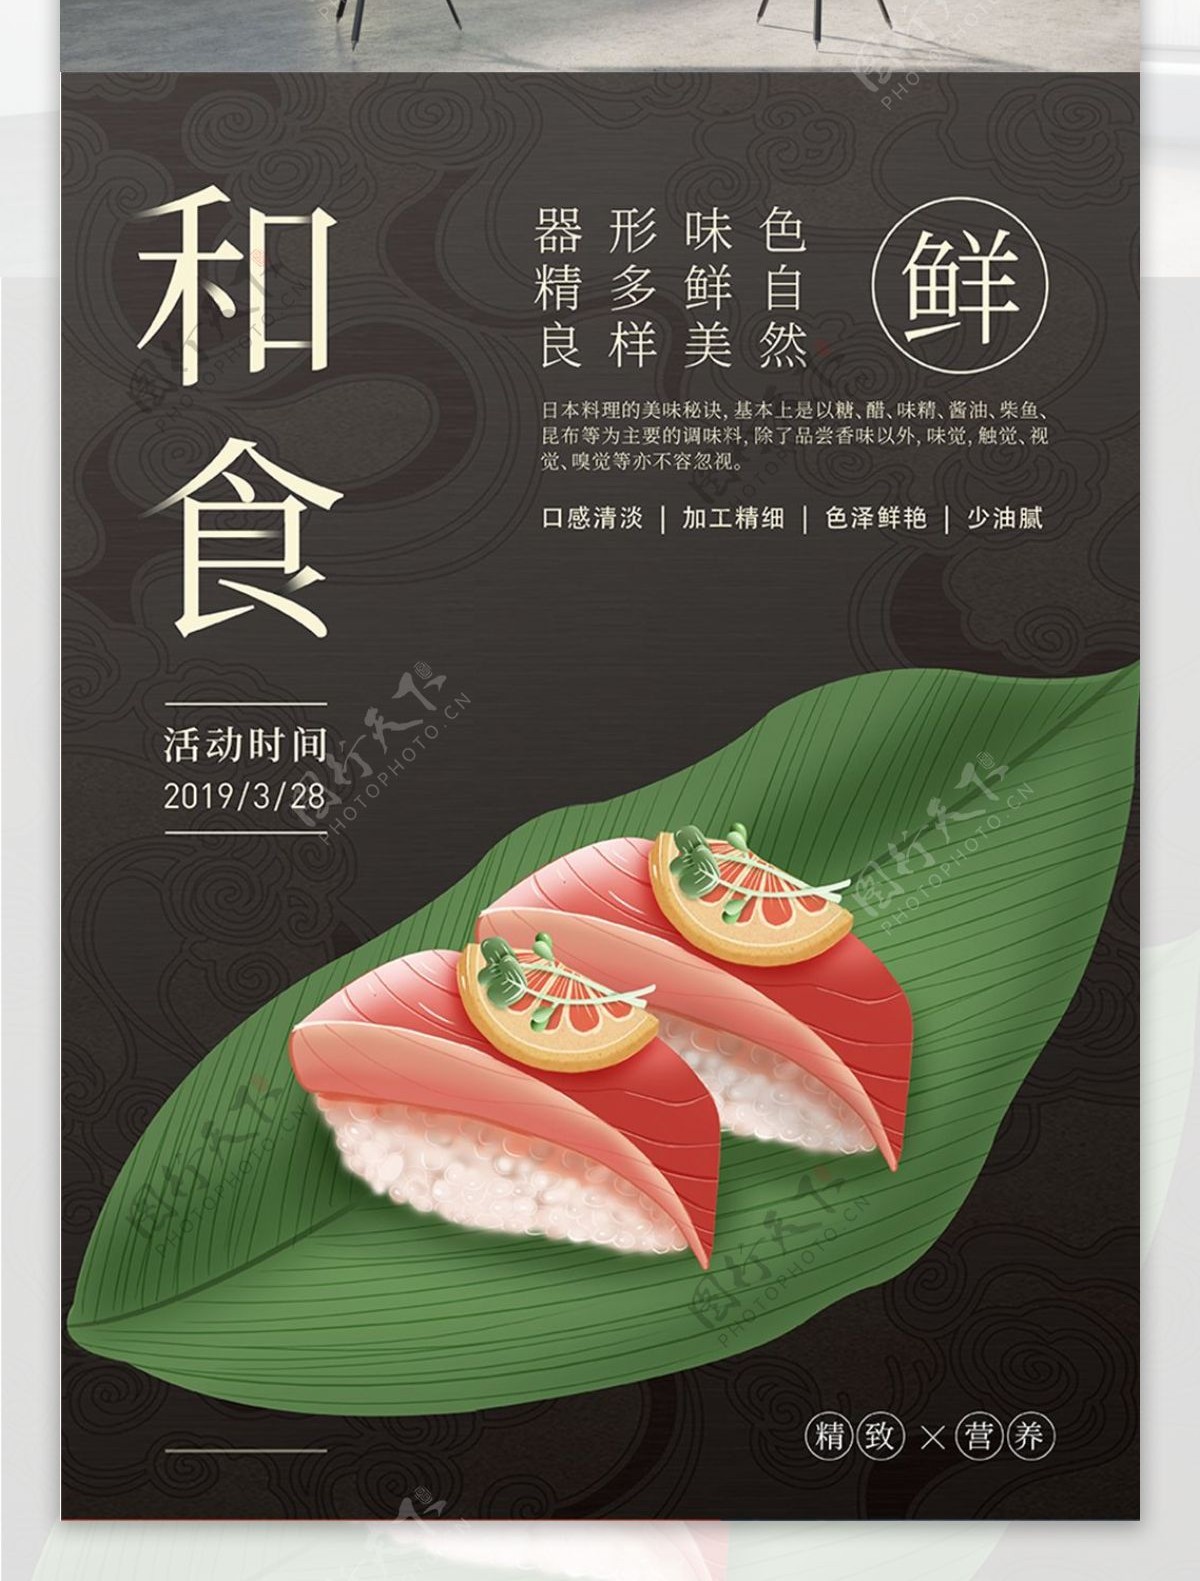 原创插画日本美食排版海报